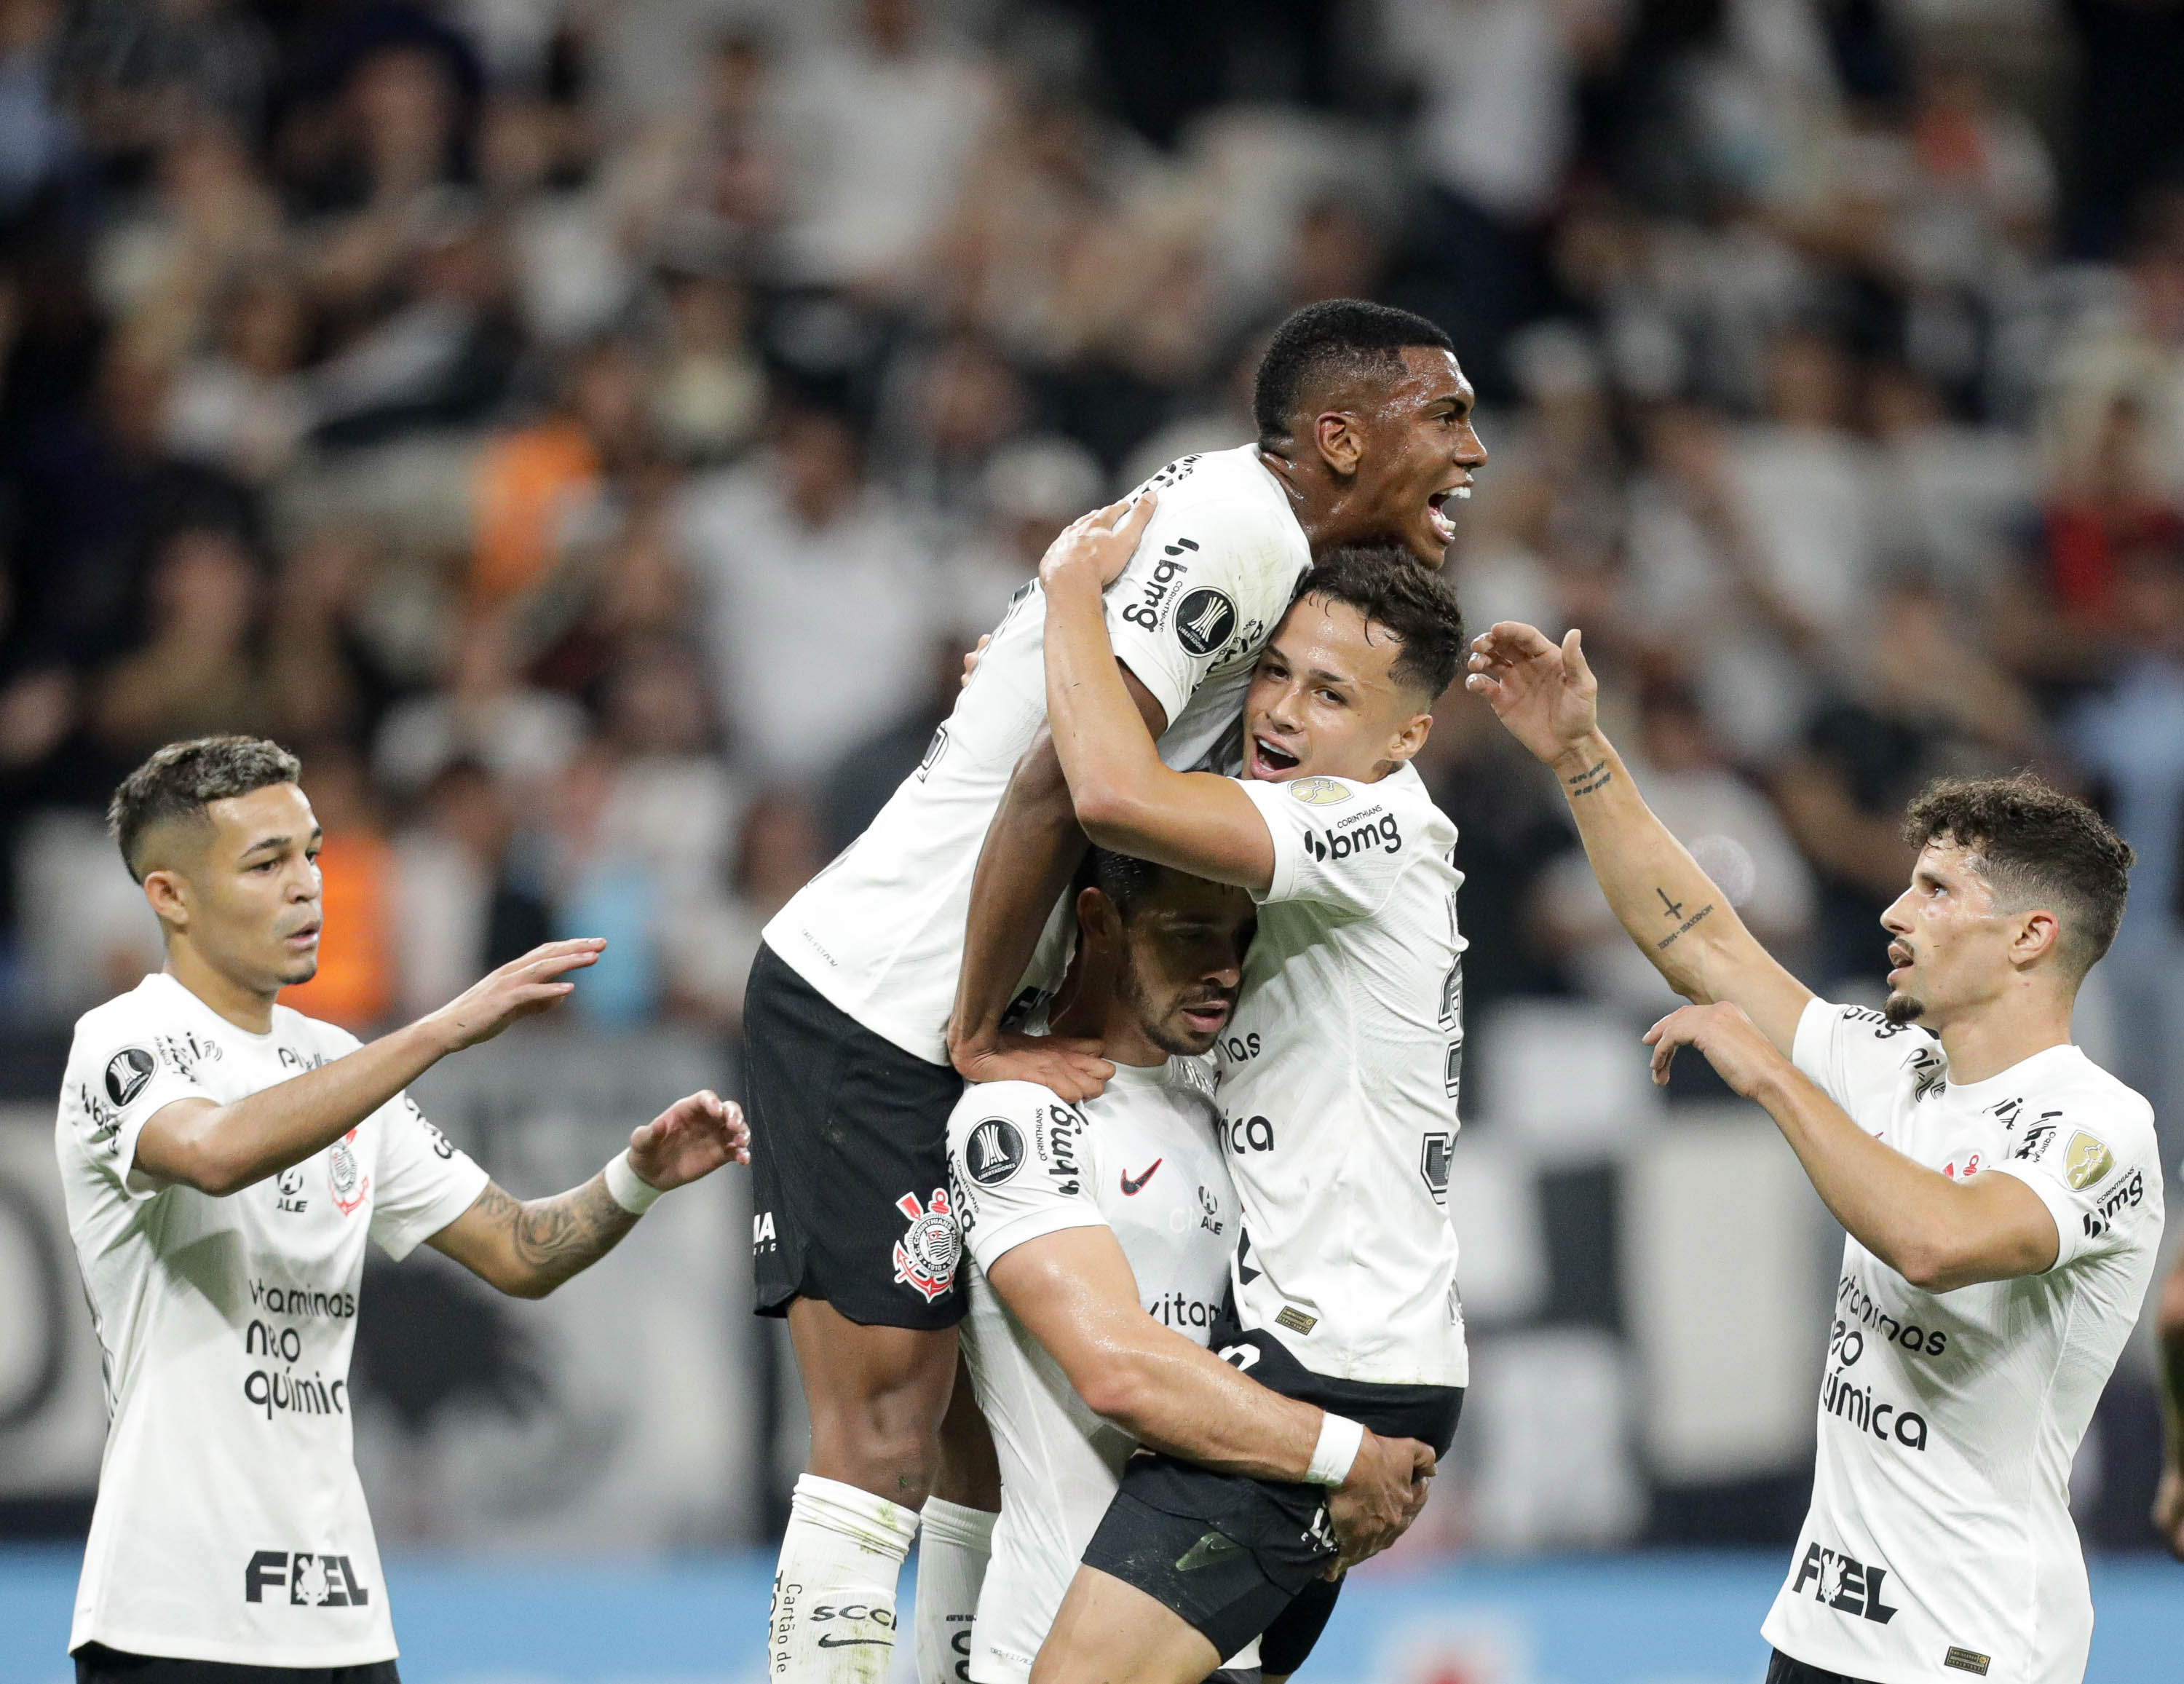 Libertadores: Onde vai passar o jogo do Corinthians ao vivo na TV e online  - 28/06